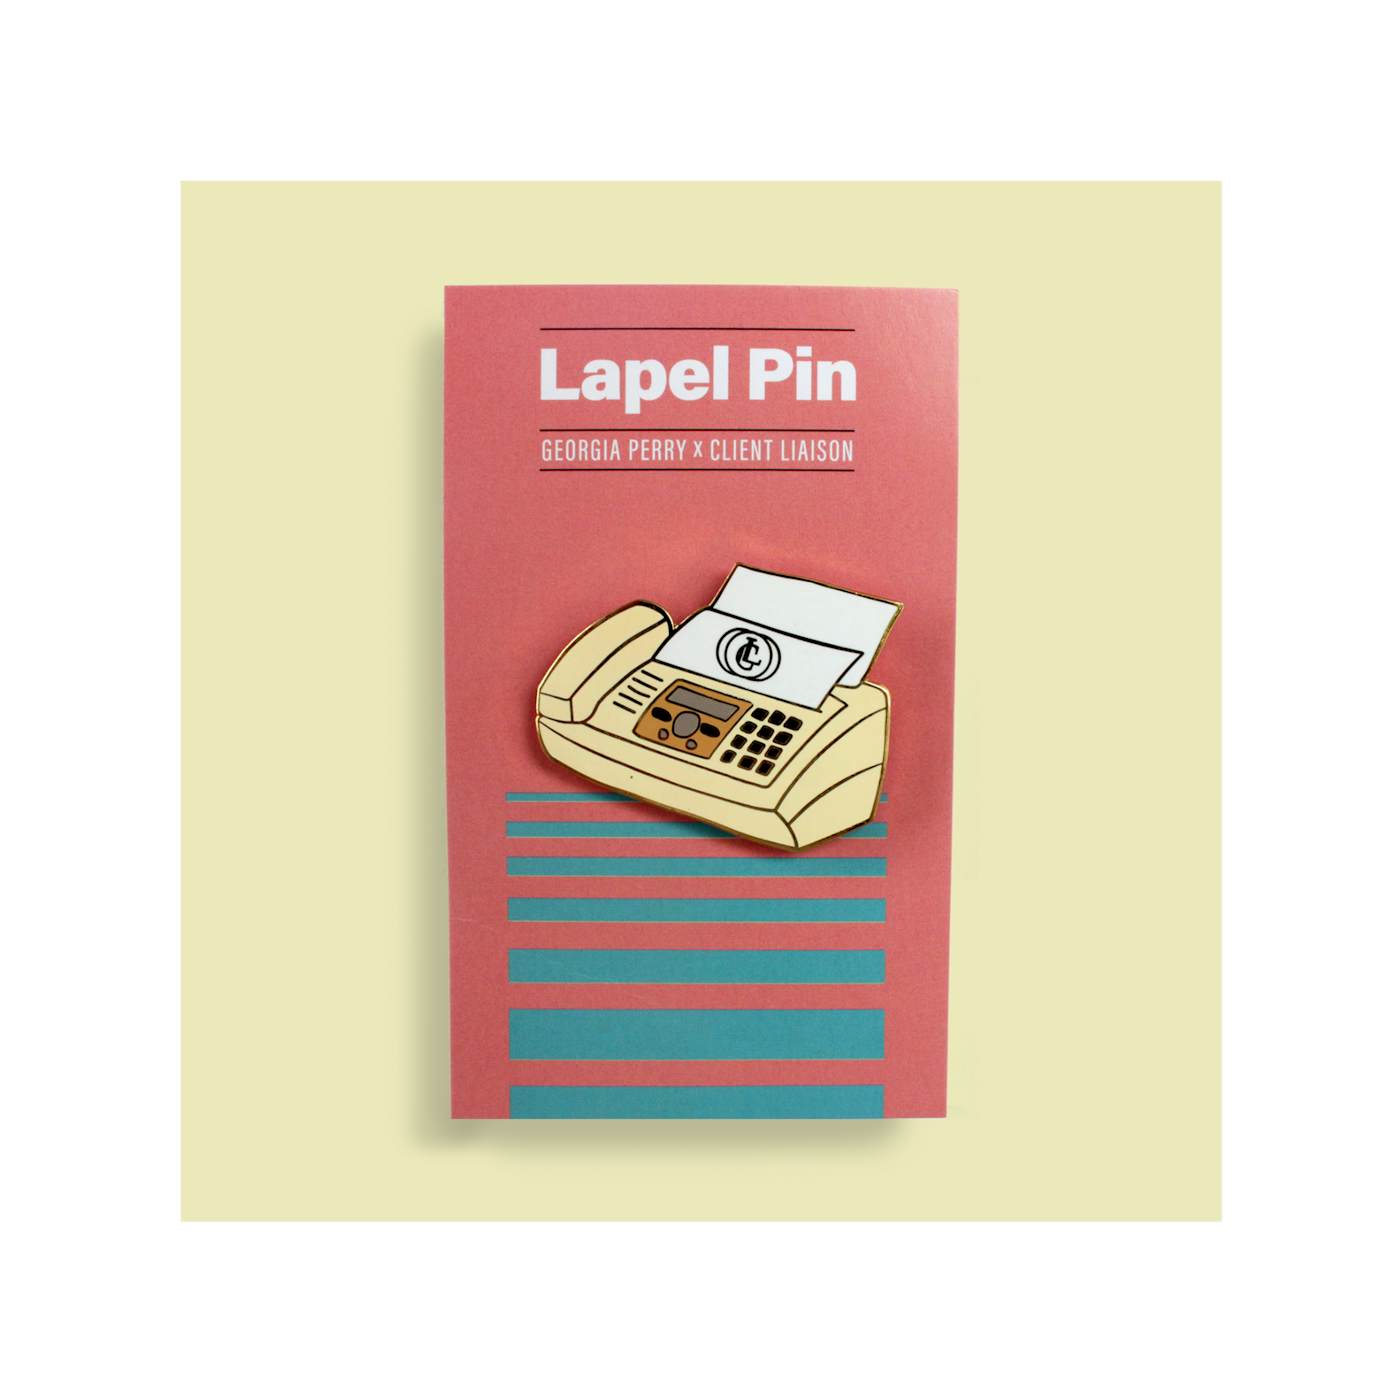 Client Liaison Fax Machine / Lapel Pin